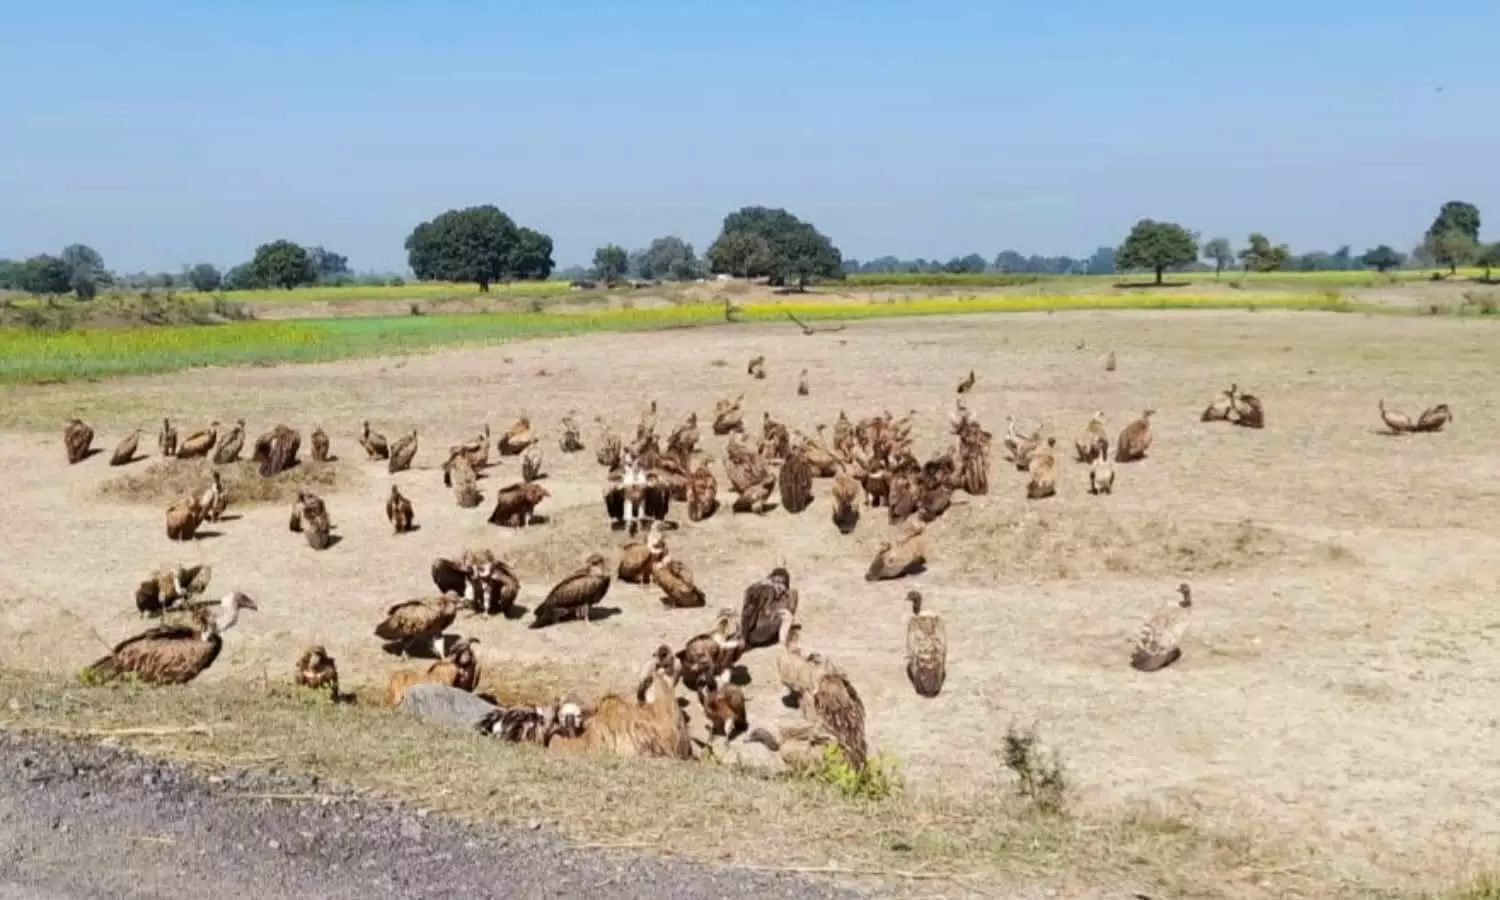 Banda Herd of vultures